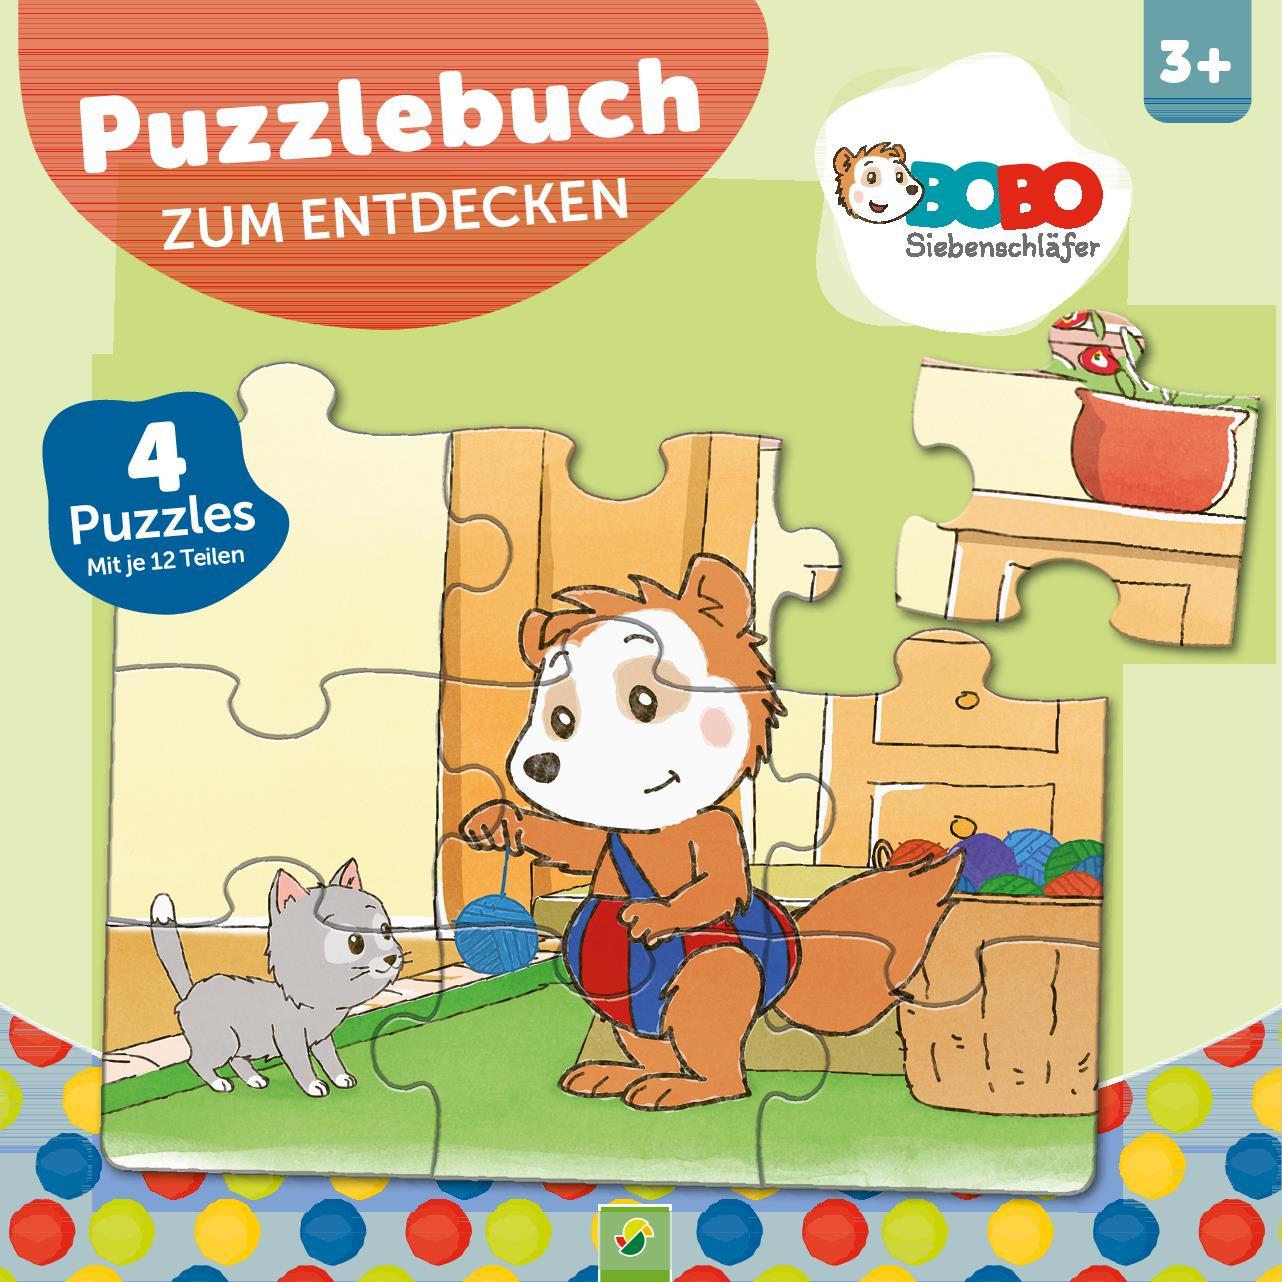 Carte Bobo Siebenschläfer Puzzlebuch zum Entdecken 